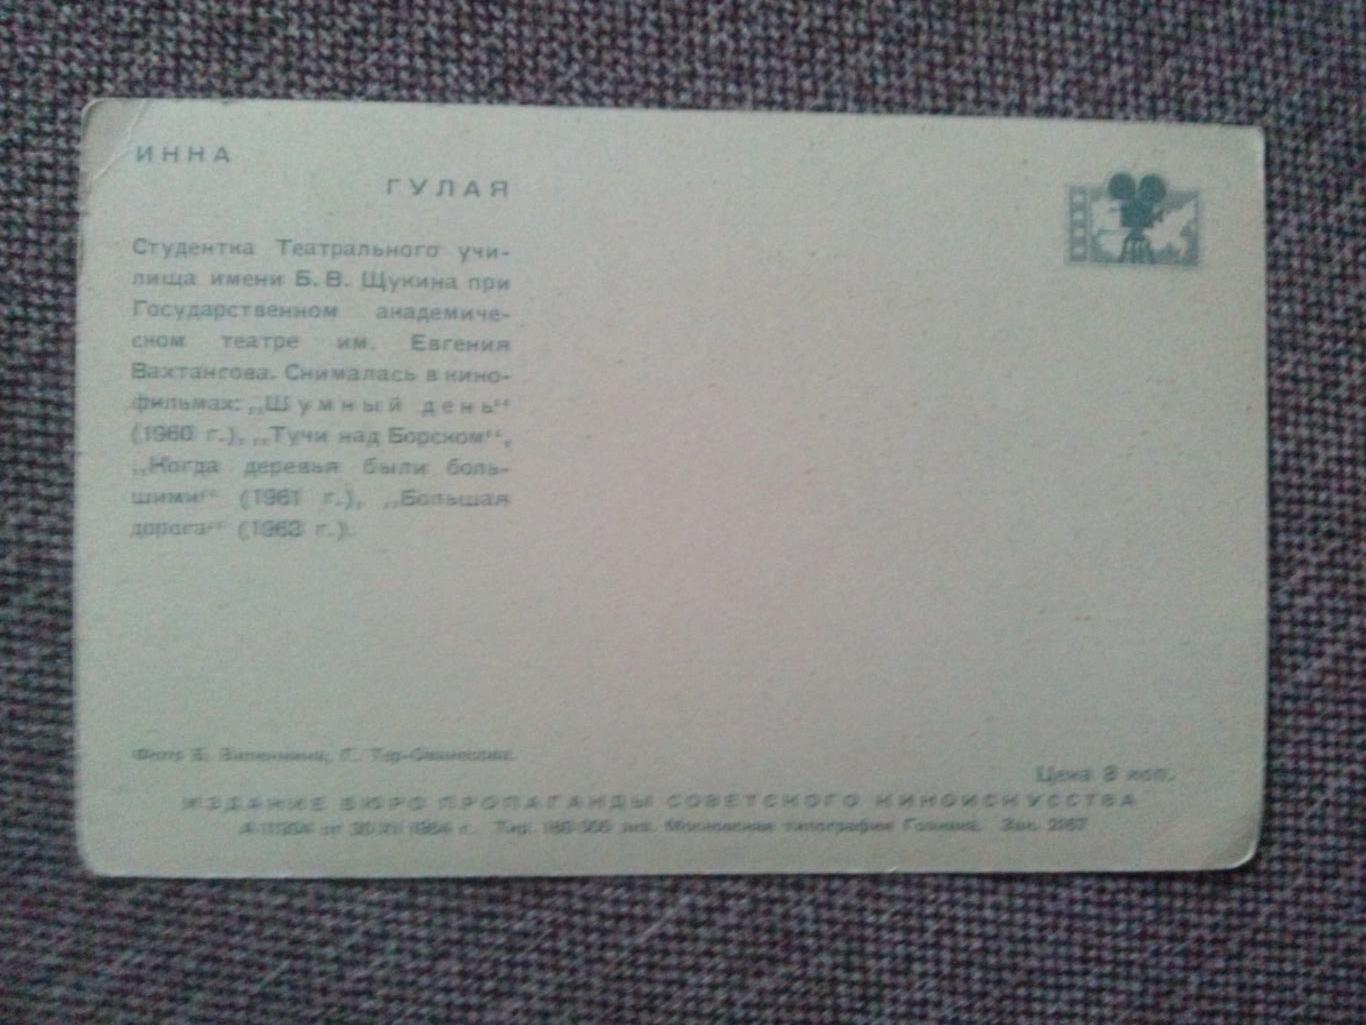 Актеры и актрисы кино и театра СССР : Гулая Инна 1964 г. ( Артисты ) 1